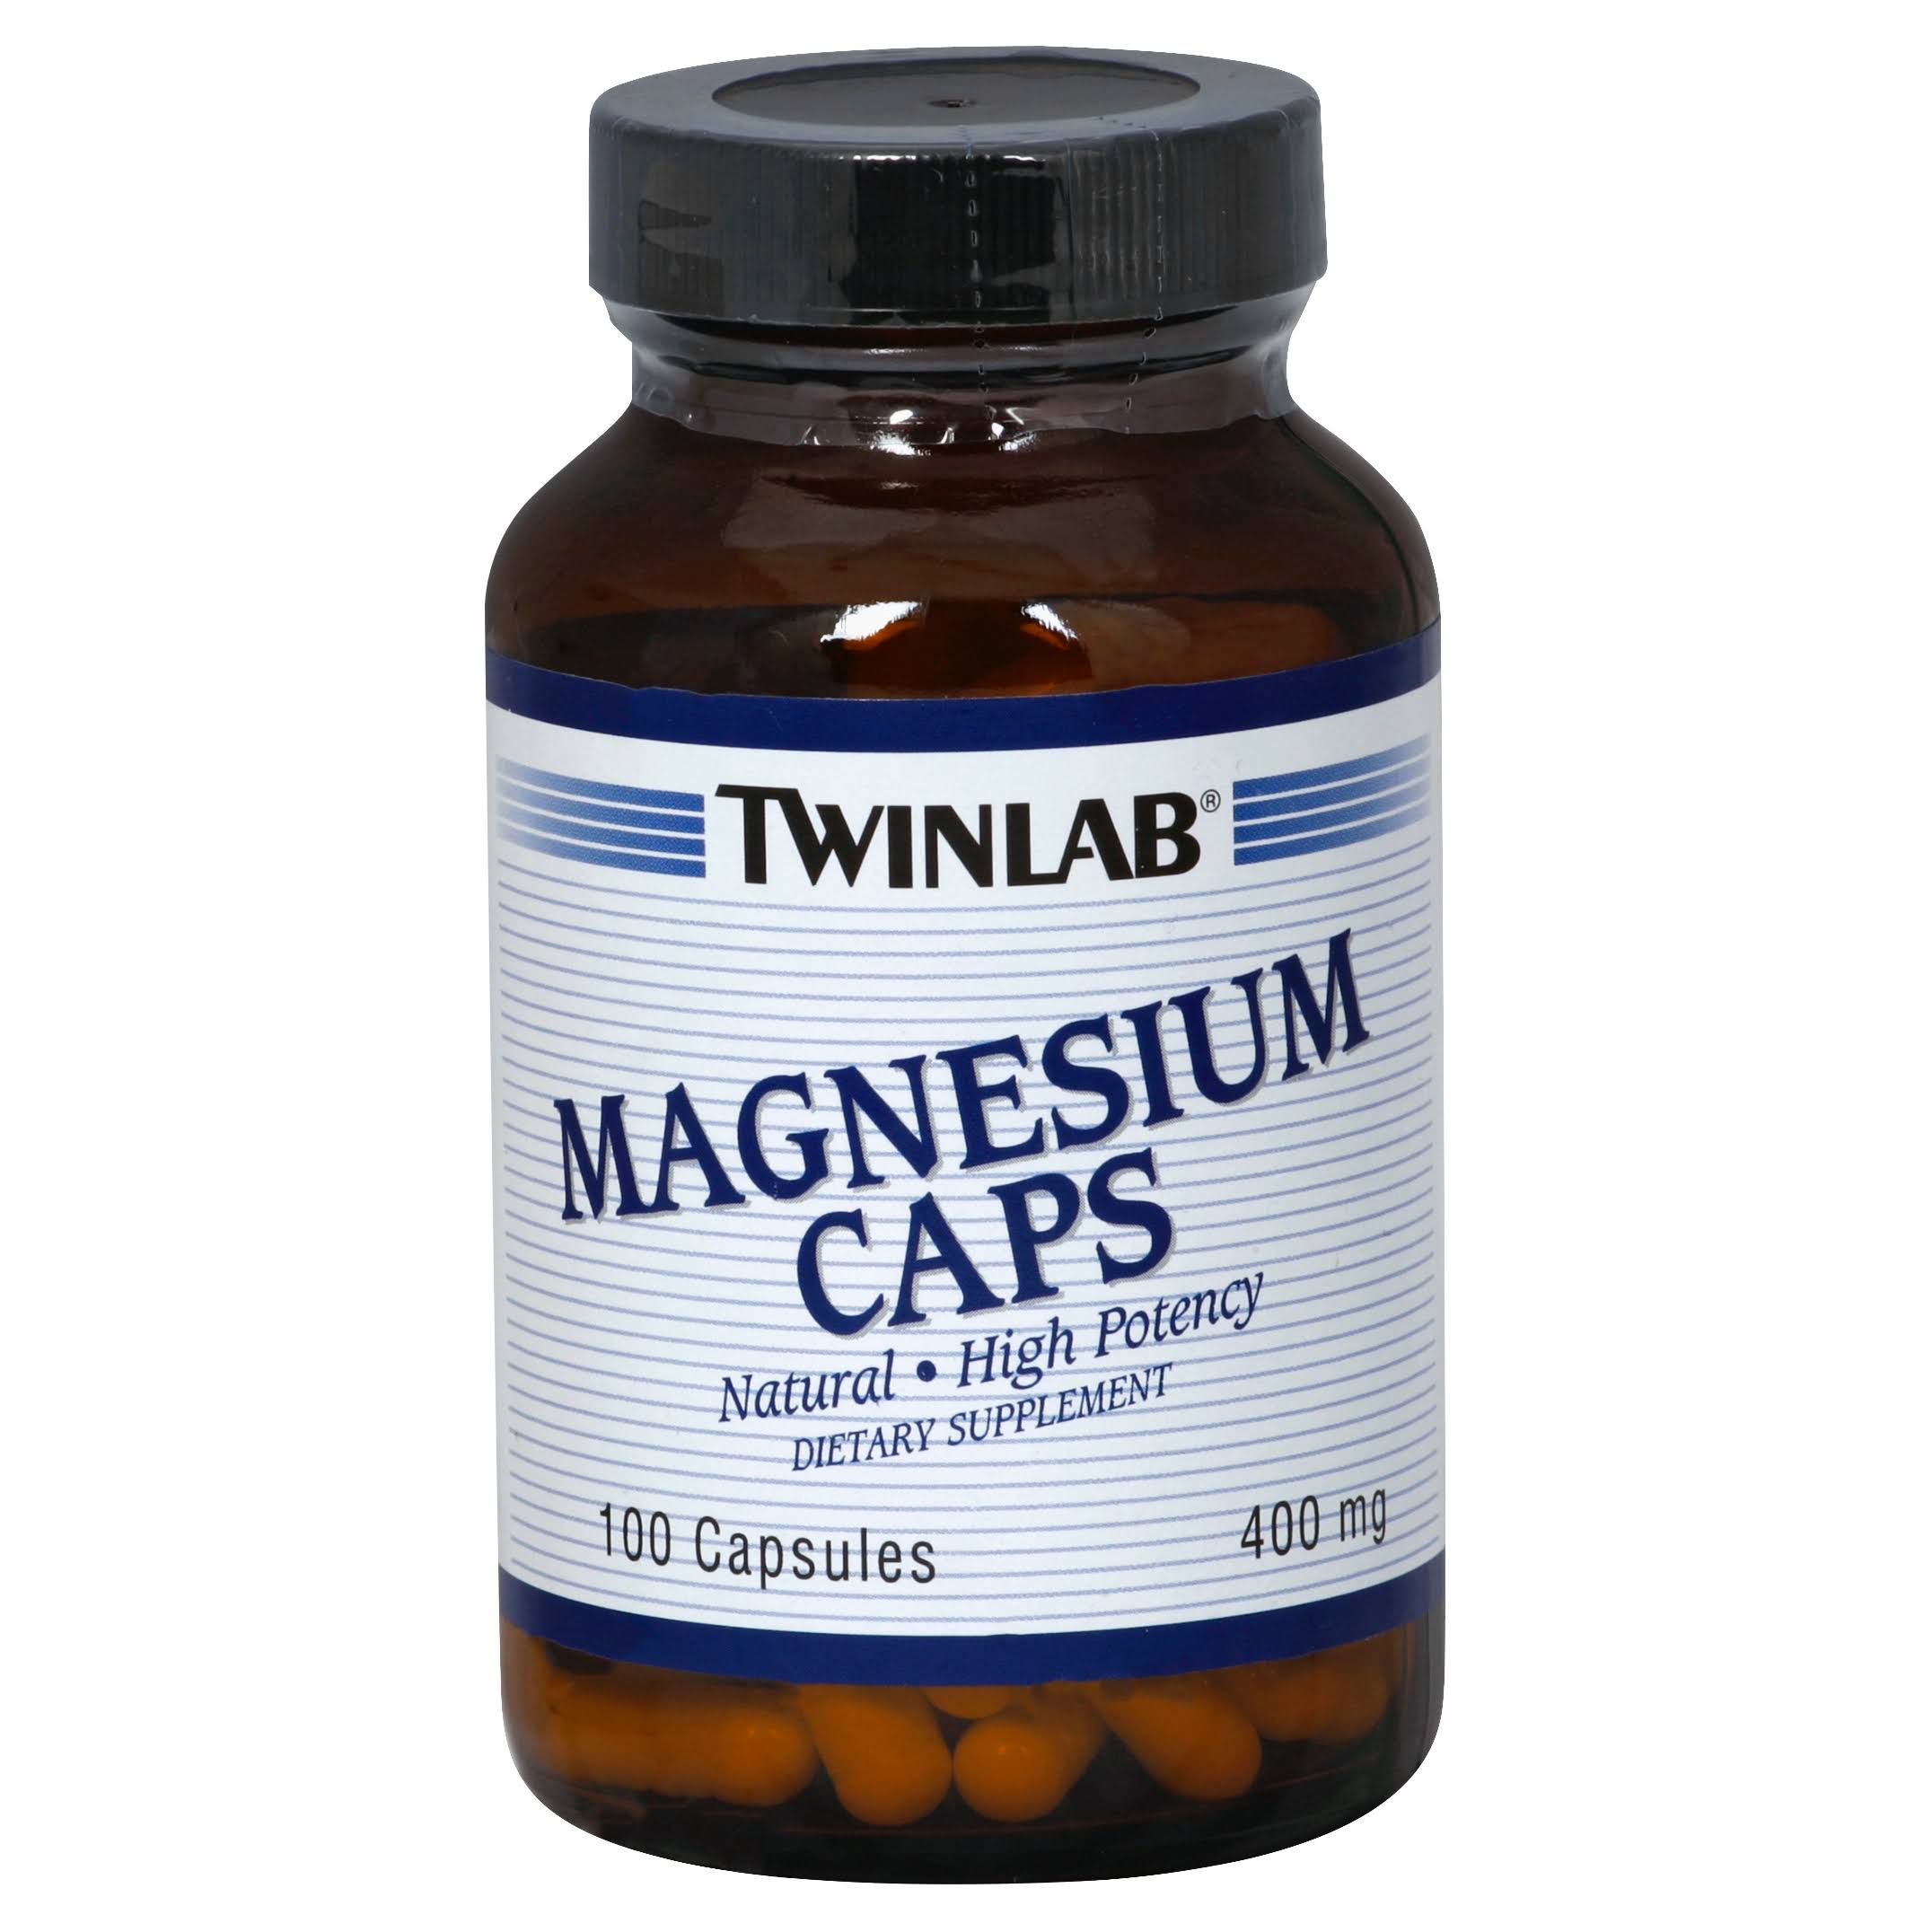 TwinLab Magnesium Caps - 400mg, 100 Capsules